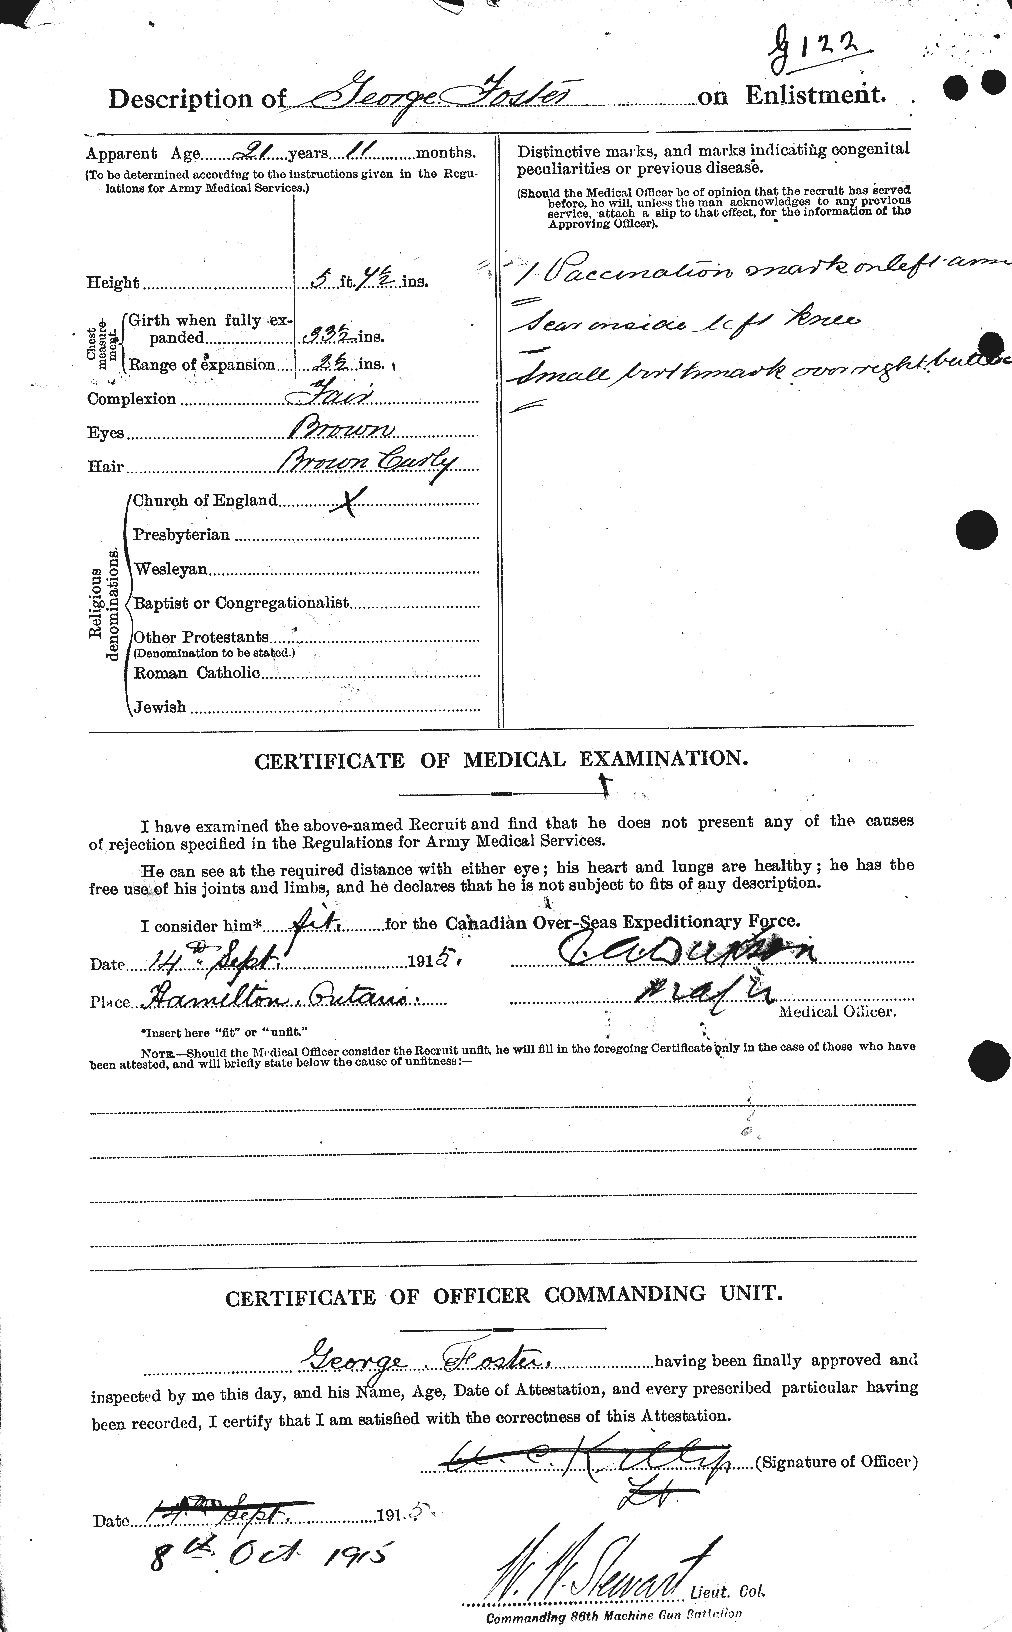 Dossiers du Personnel de la Première Guerre mondiale - CEC 330672b